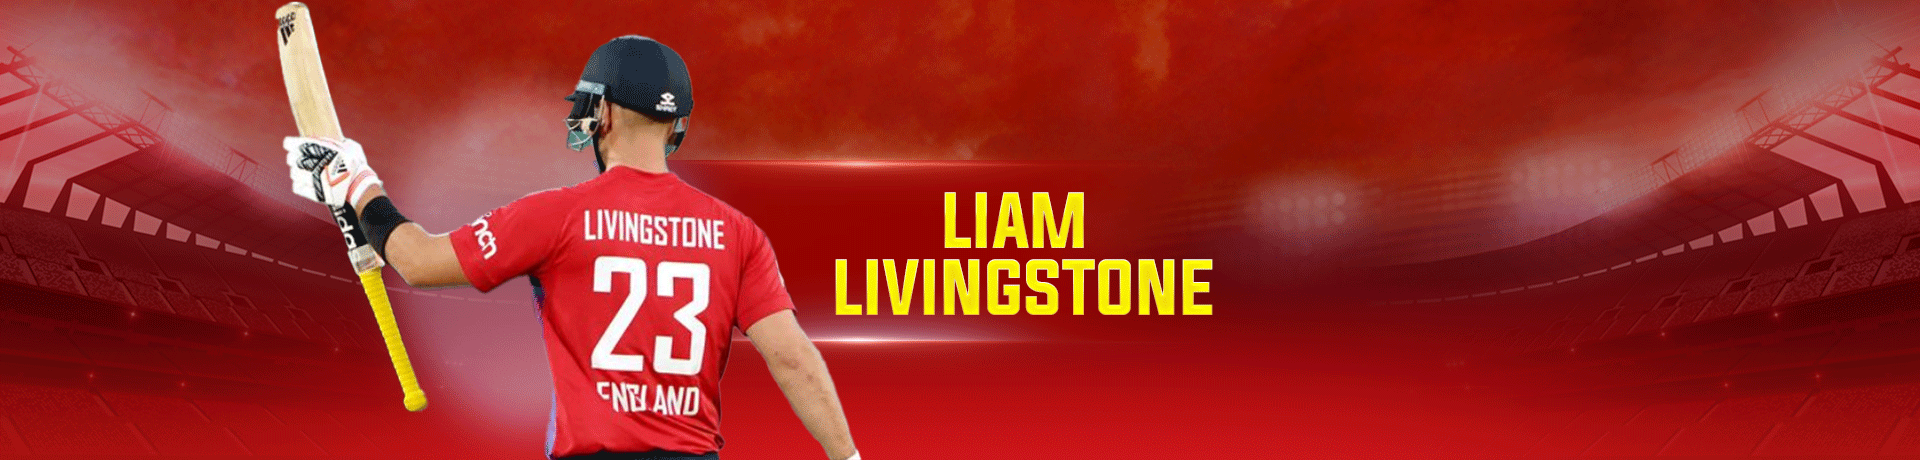 Liam Livingstone